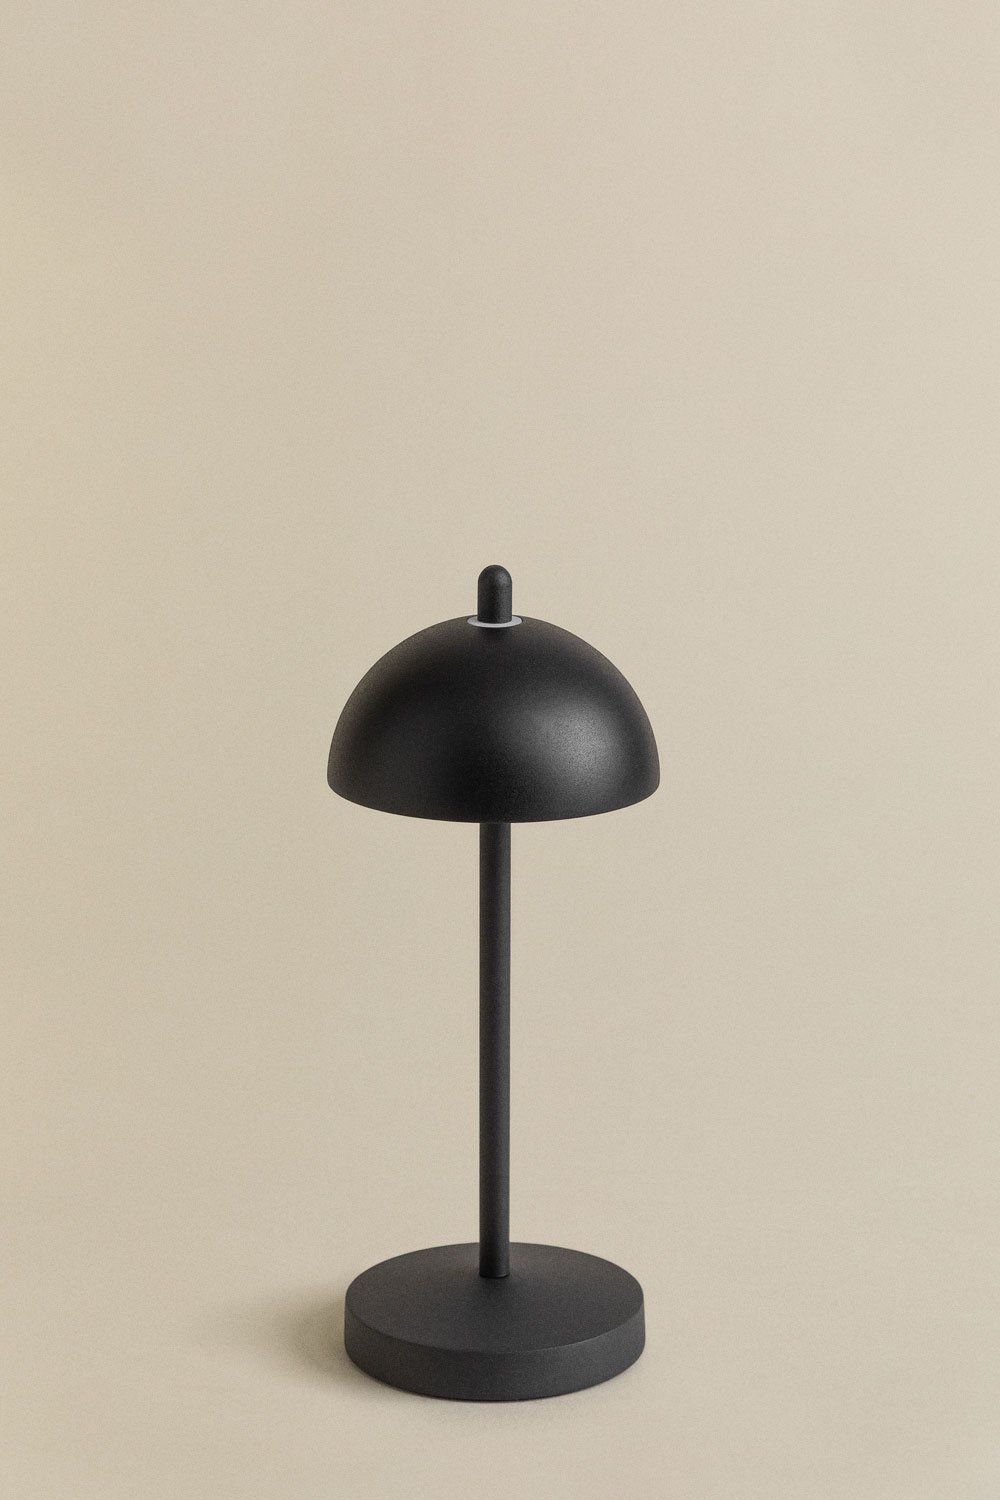 Helenia Draadloze LED Tafellamp , galerij beeld 1